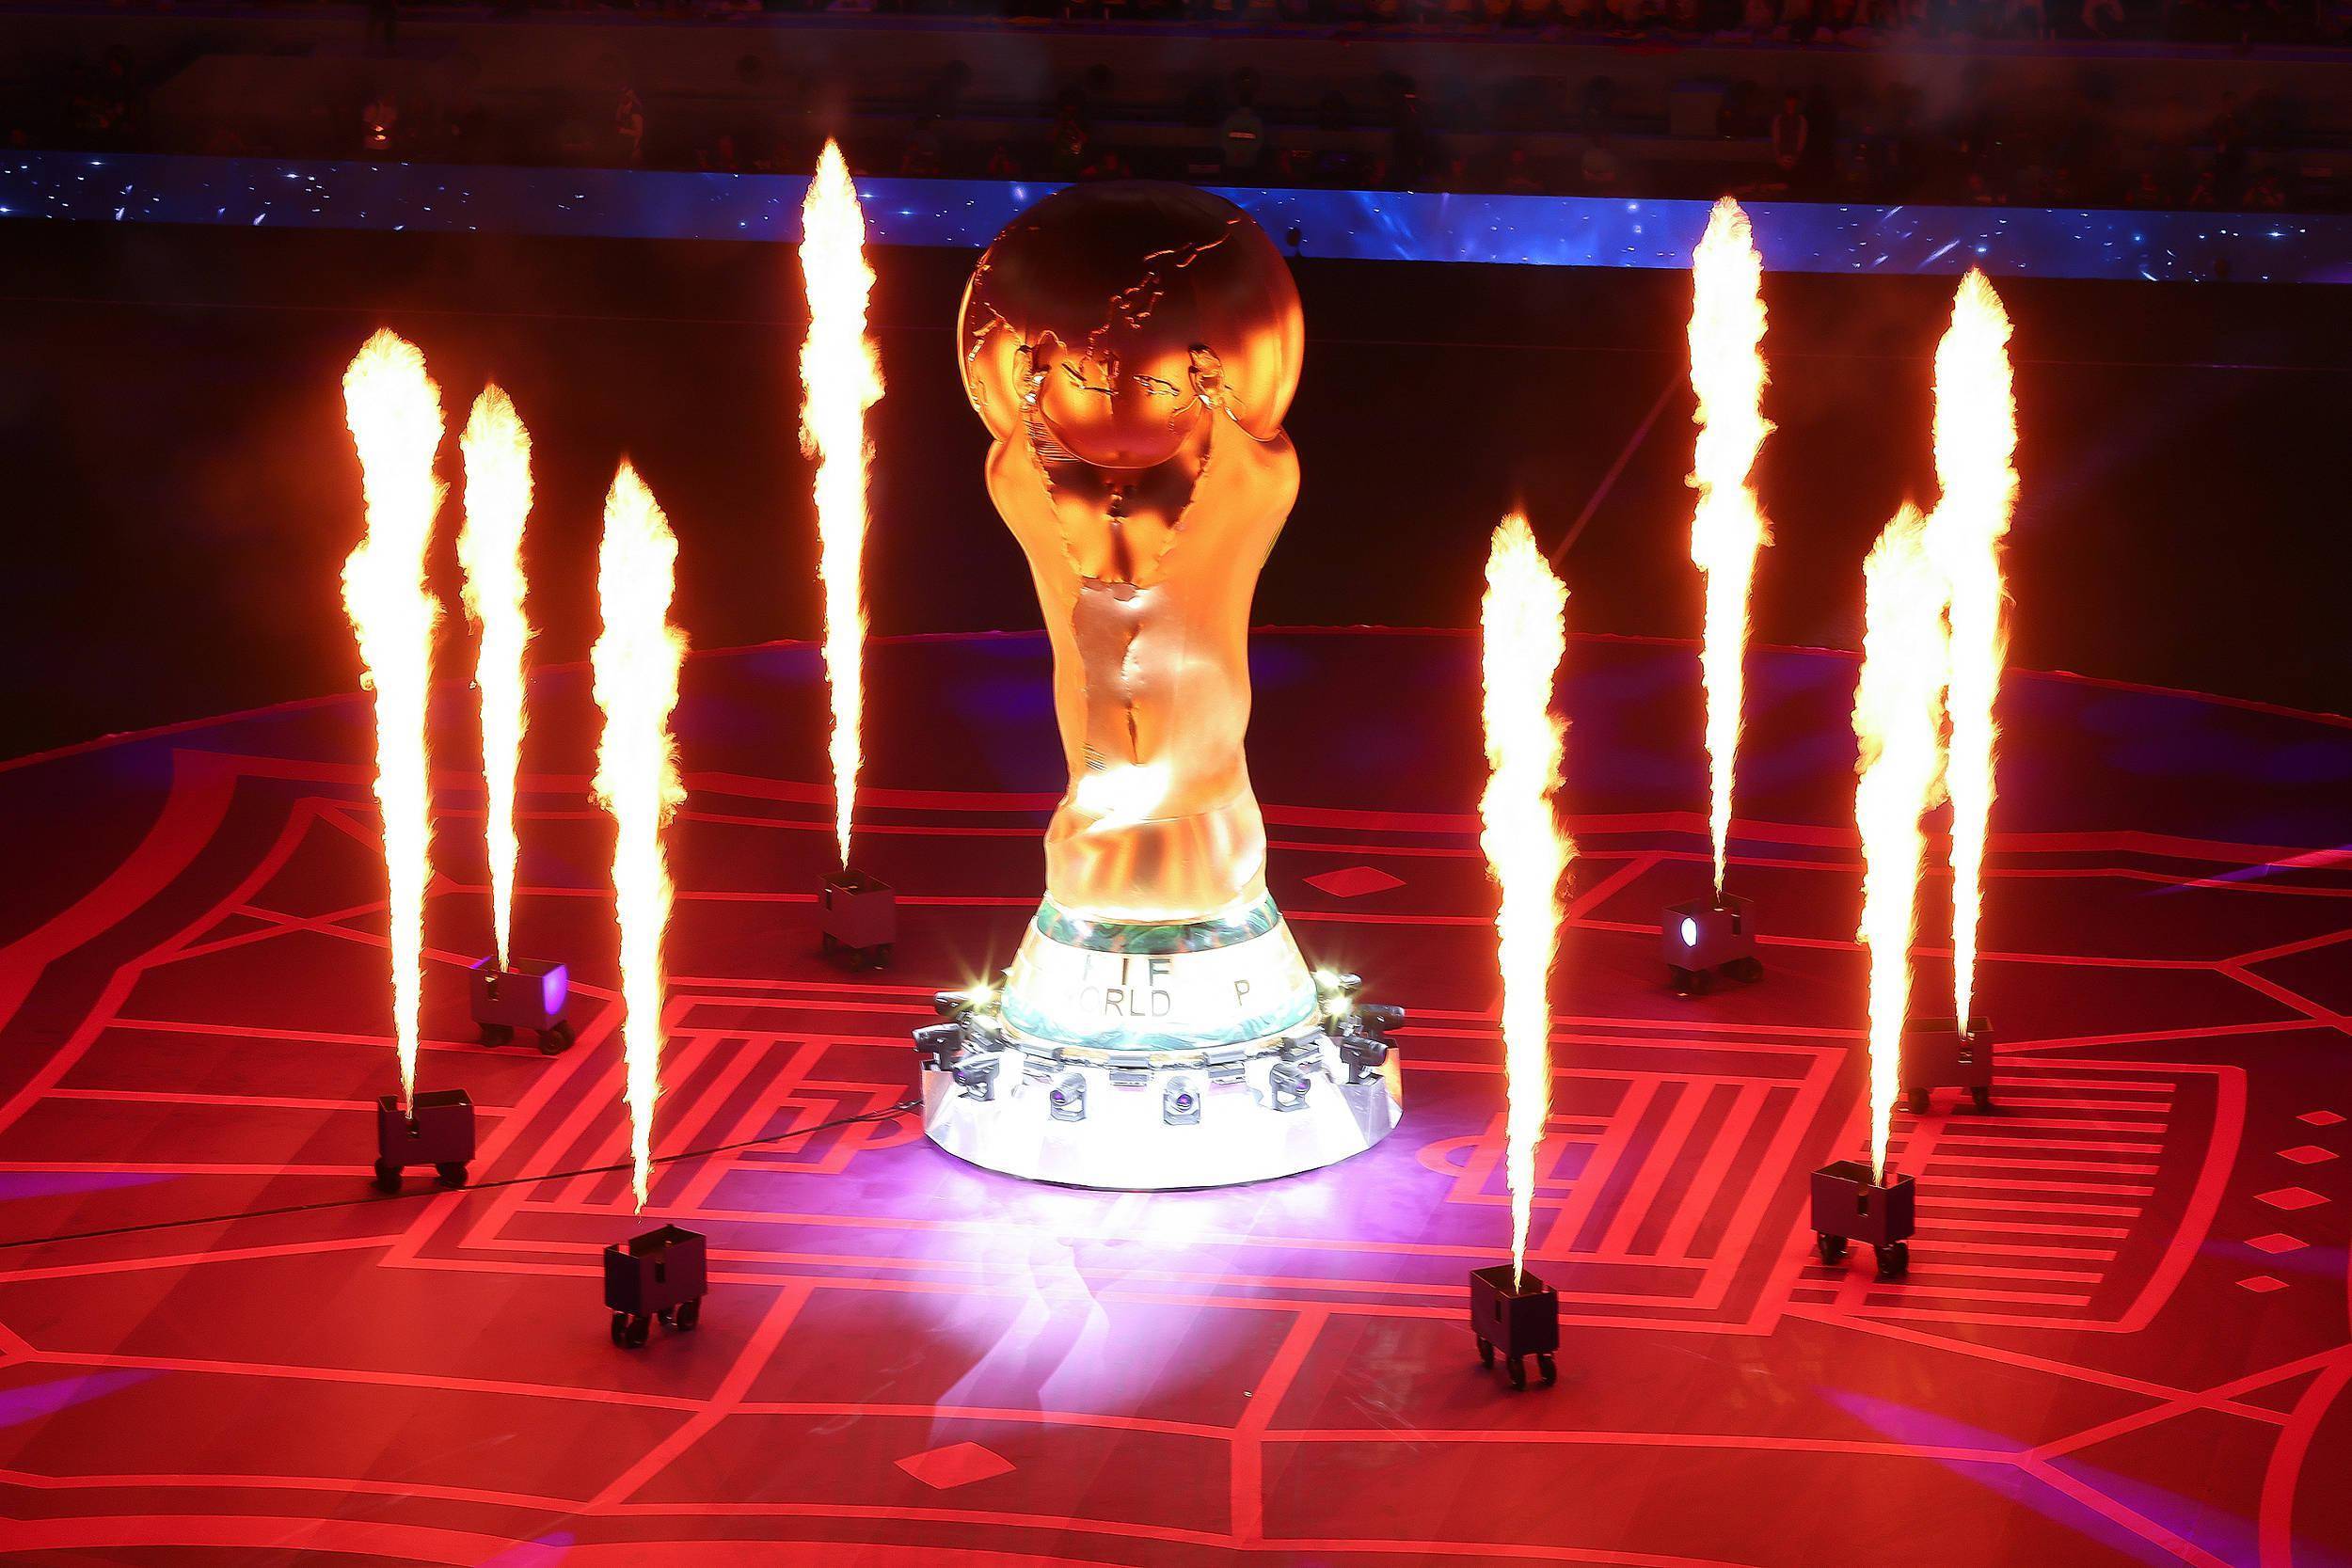 国际足联表示，在与 2022 年卡塔尔世界杯相关的 4 年商业周期内，该机构获得 75 亿美元的创纪录收入，较 2018 年俄罗斯世界杯相关的前一个商业周期多出 10 亿美元。